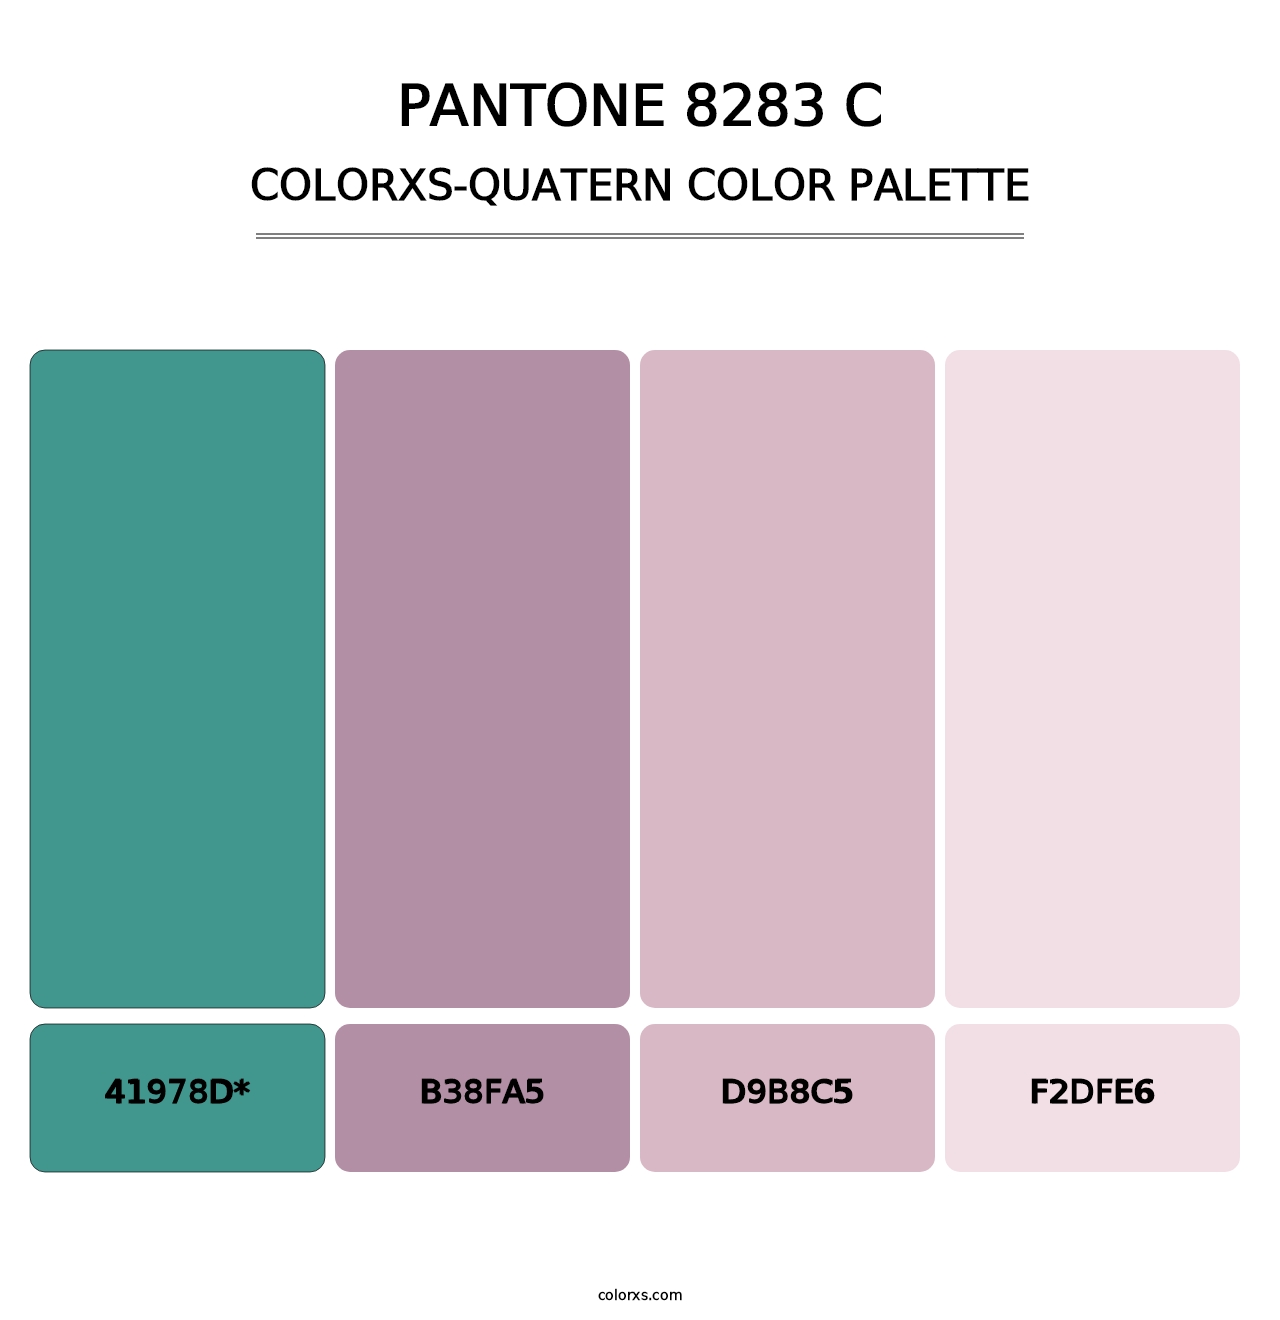 PANTONE 8283 C - Colorxs Quatern Palette